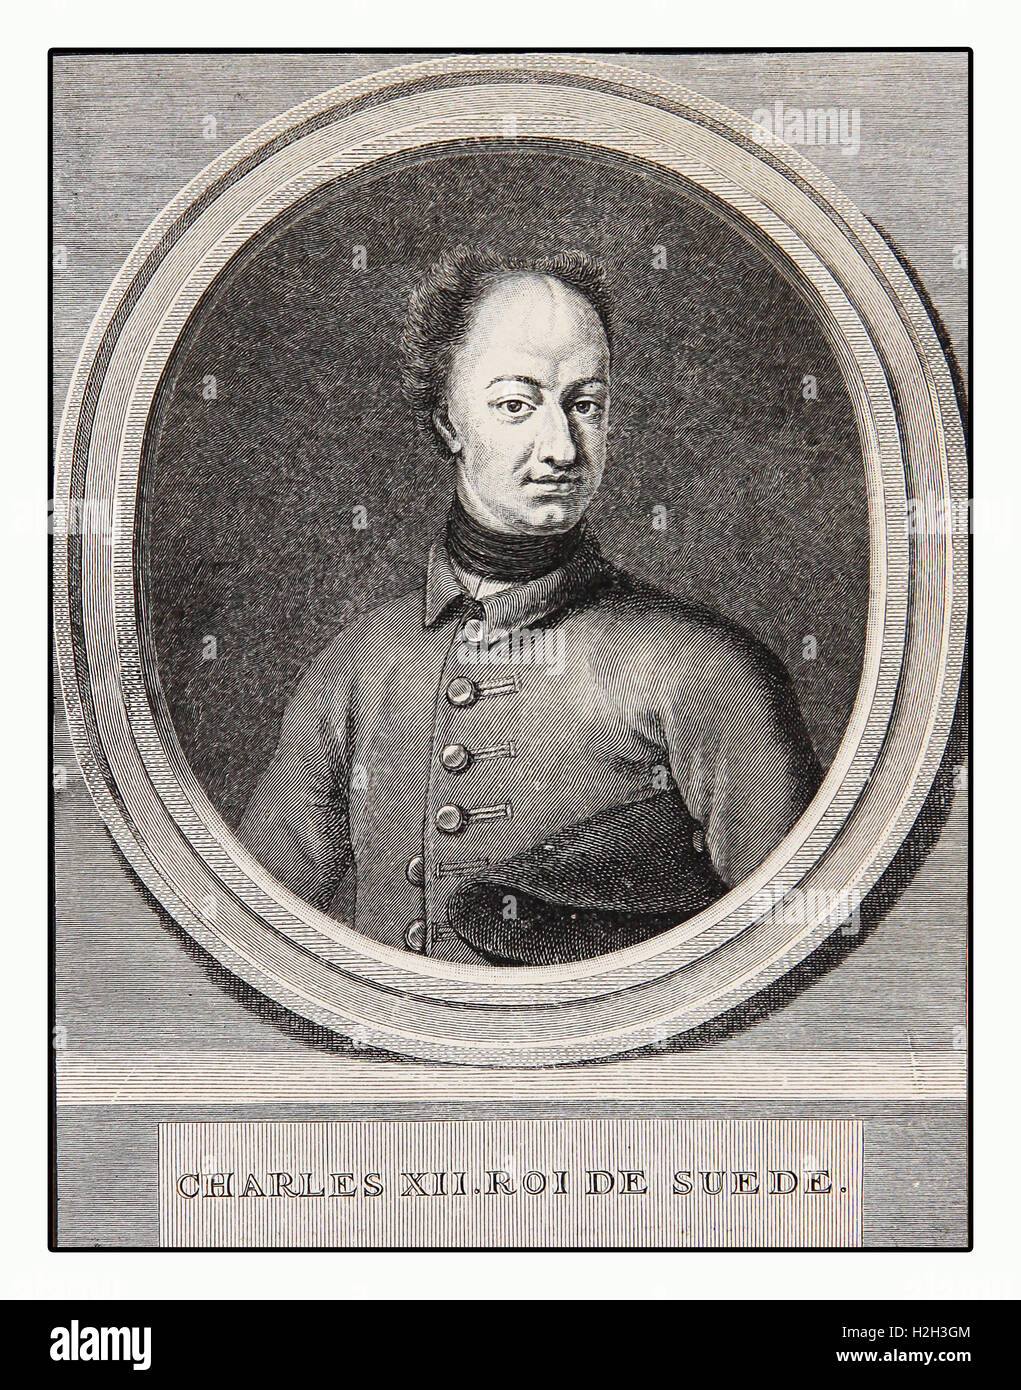 Gravure portrait de Charles XII, roi de Suède, chef militaire, politicien et tacticien capable Banque D'Images